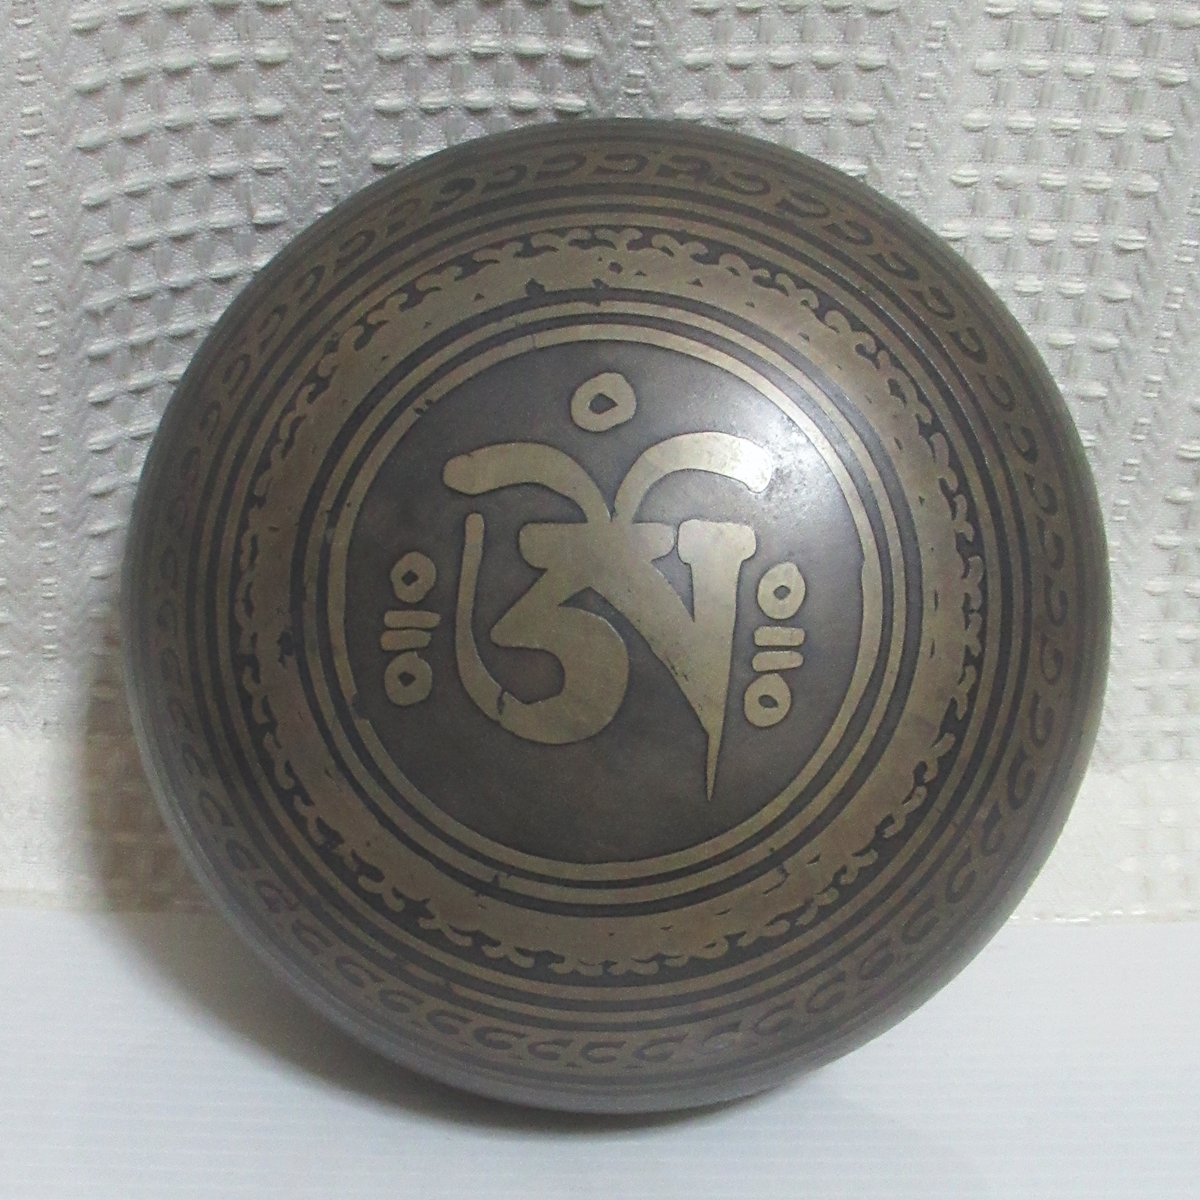 sin silver g bowl (katsuma) 826g healing tea kla bowl .. law .